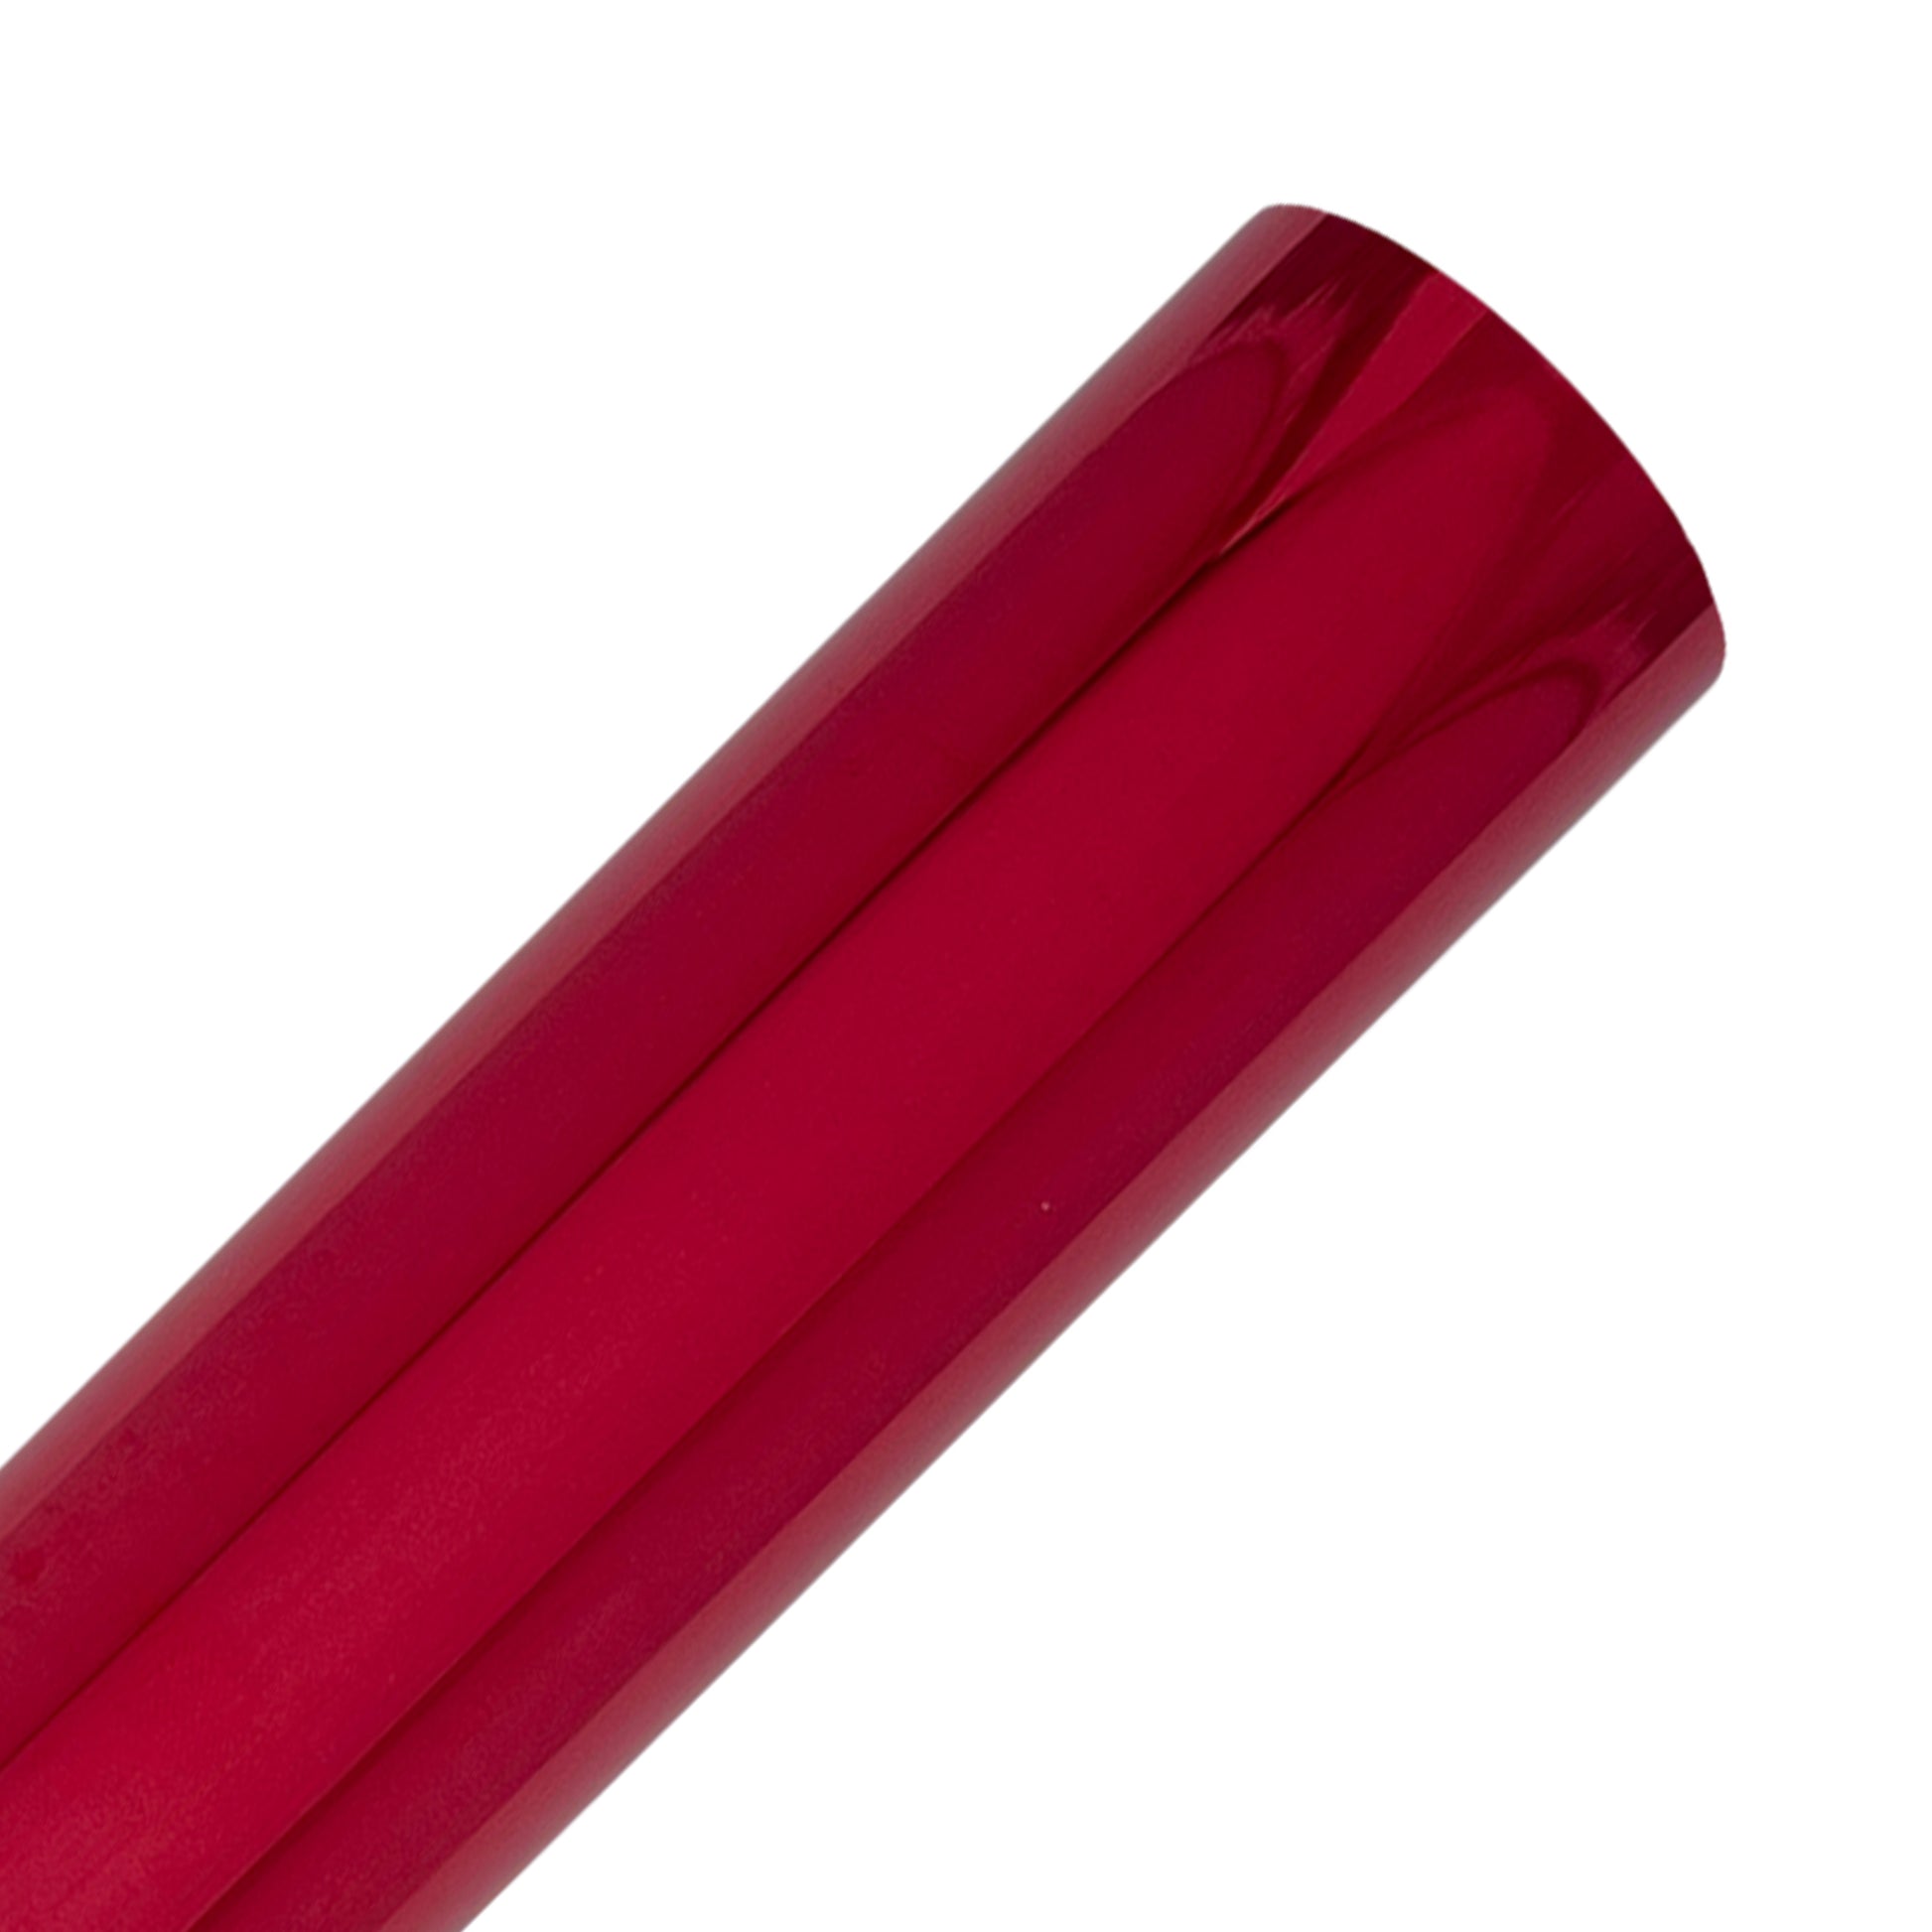 Red Flock Heat Transfer Vinyl Rolls By Craftables – shopcraftables